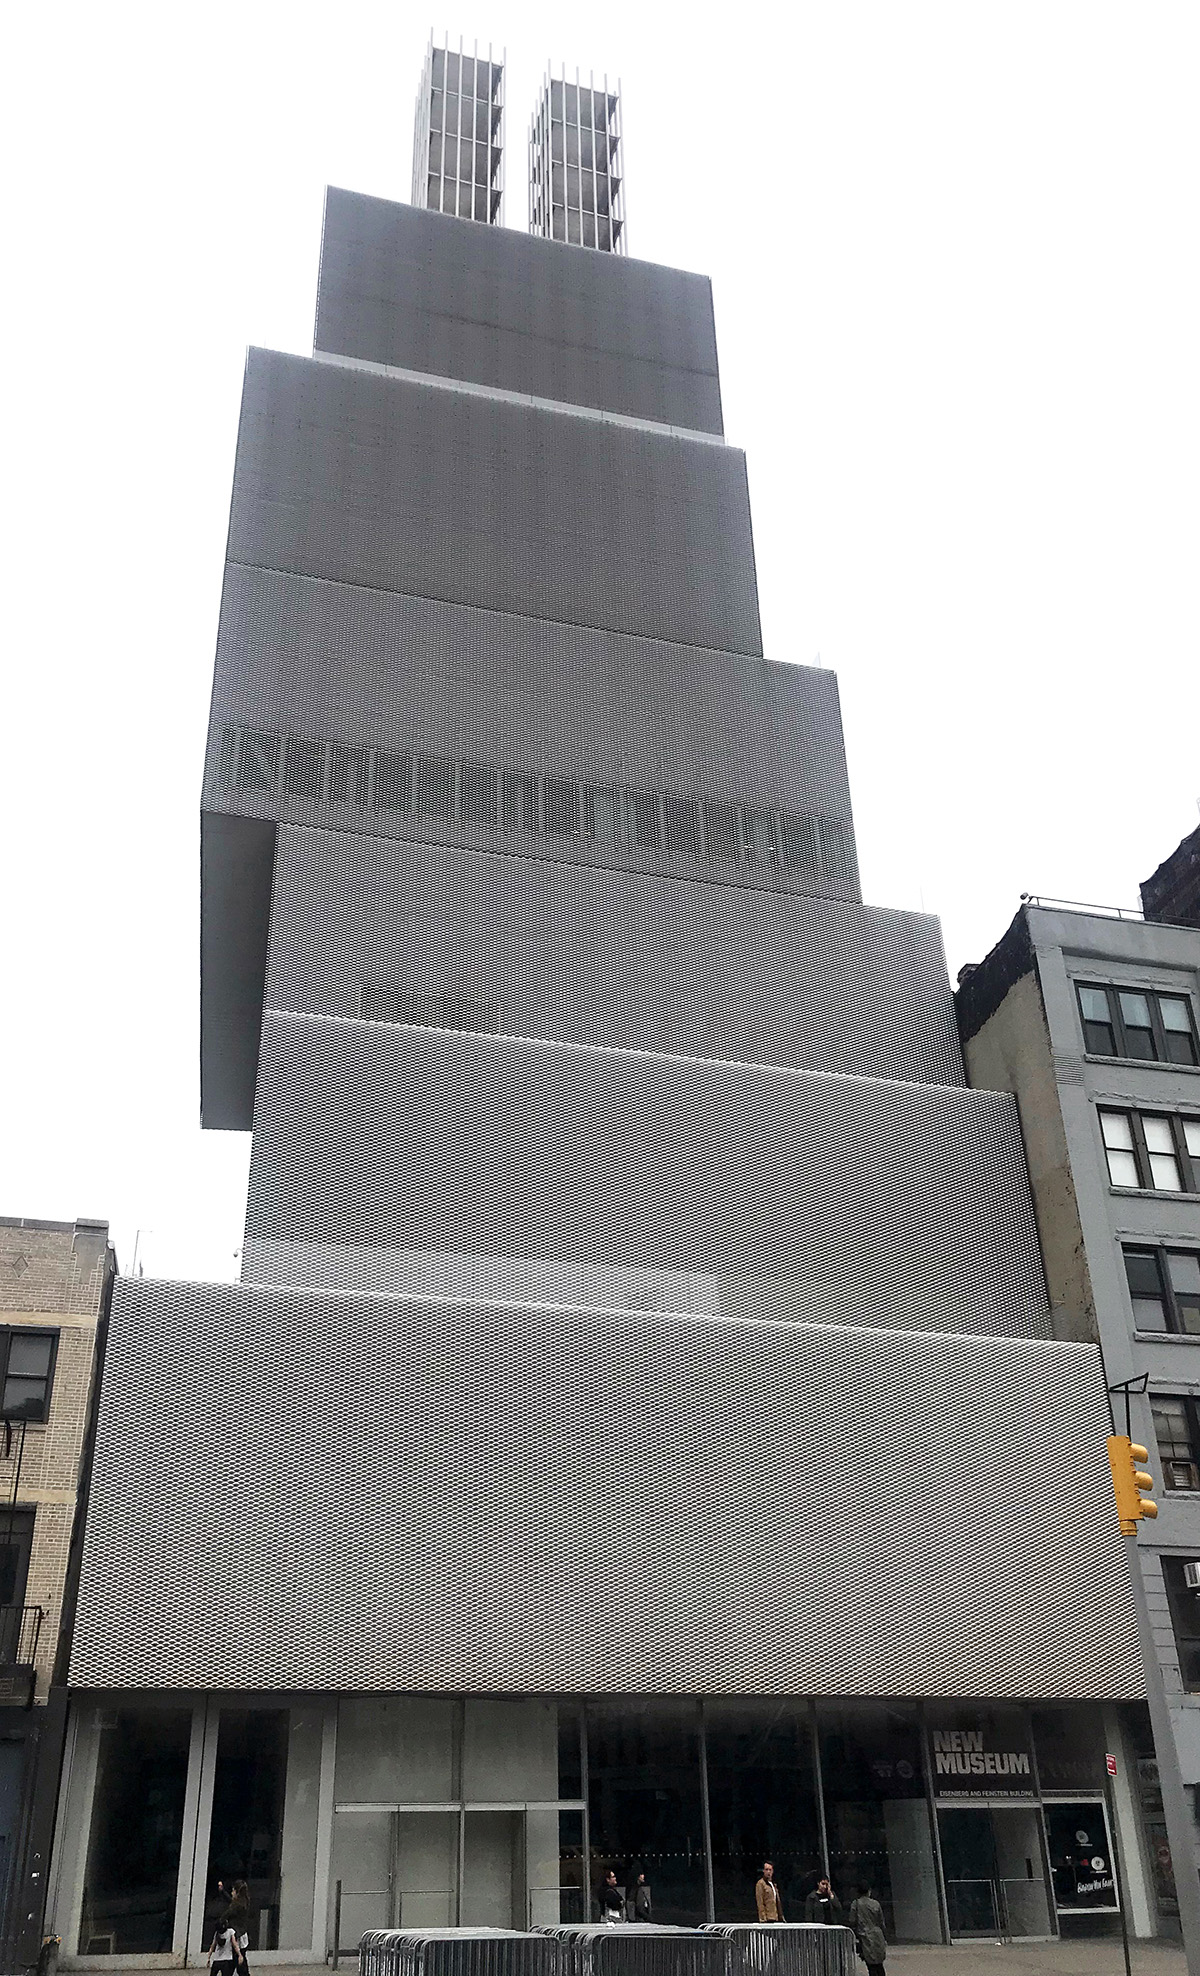 9. Nuevo Museo de Arte Contemporáneo, Lower East Side.